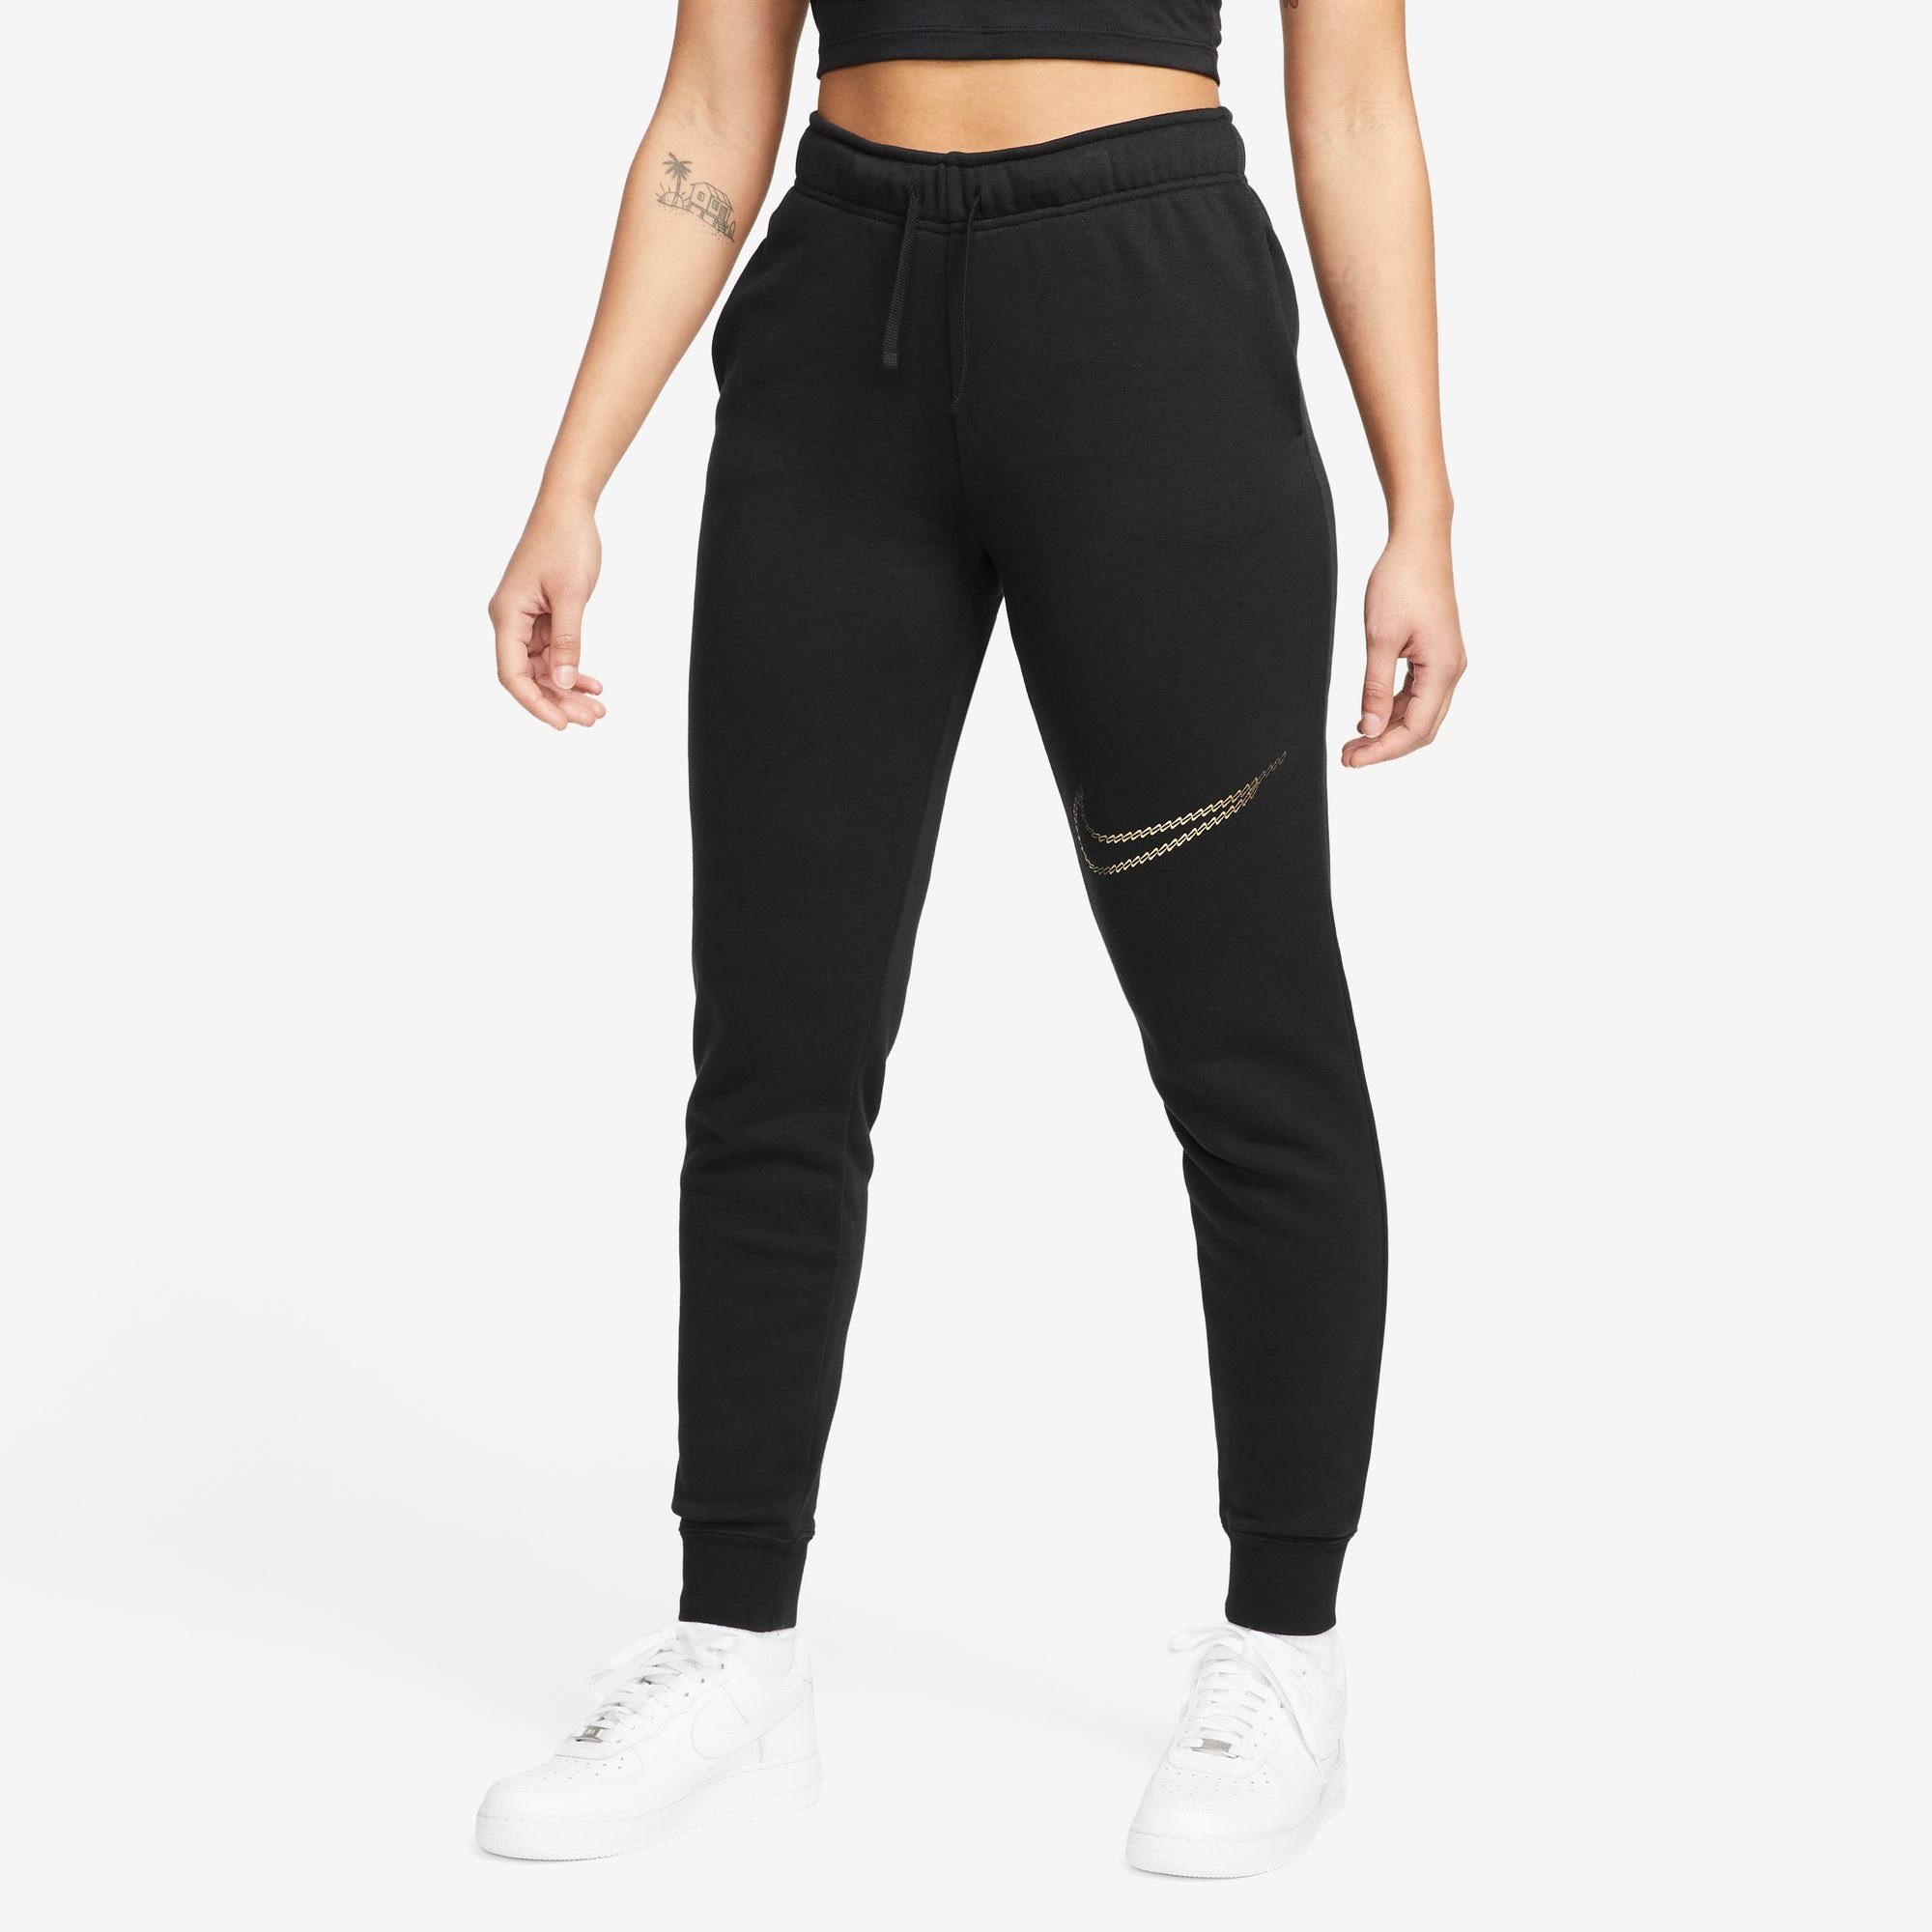 WOMEN'S CLUB Nike PANTS Sportswear Jogginghose SHINE BLACK MID-RISE FLEECE